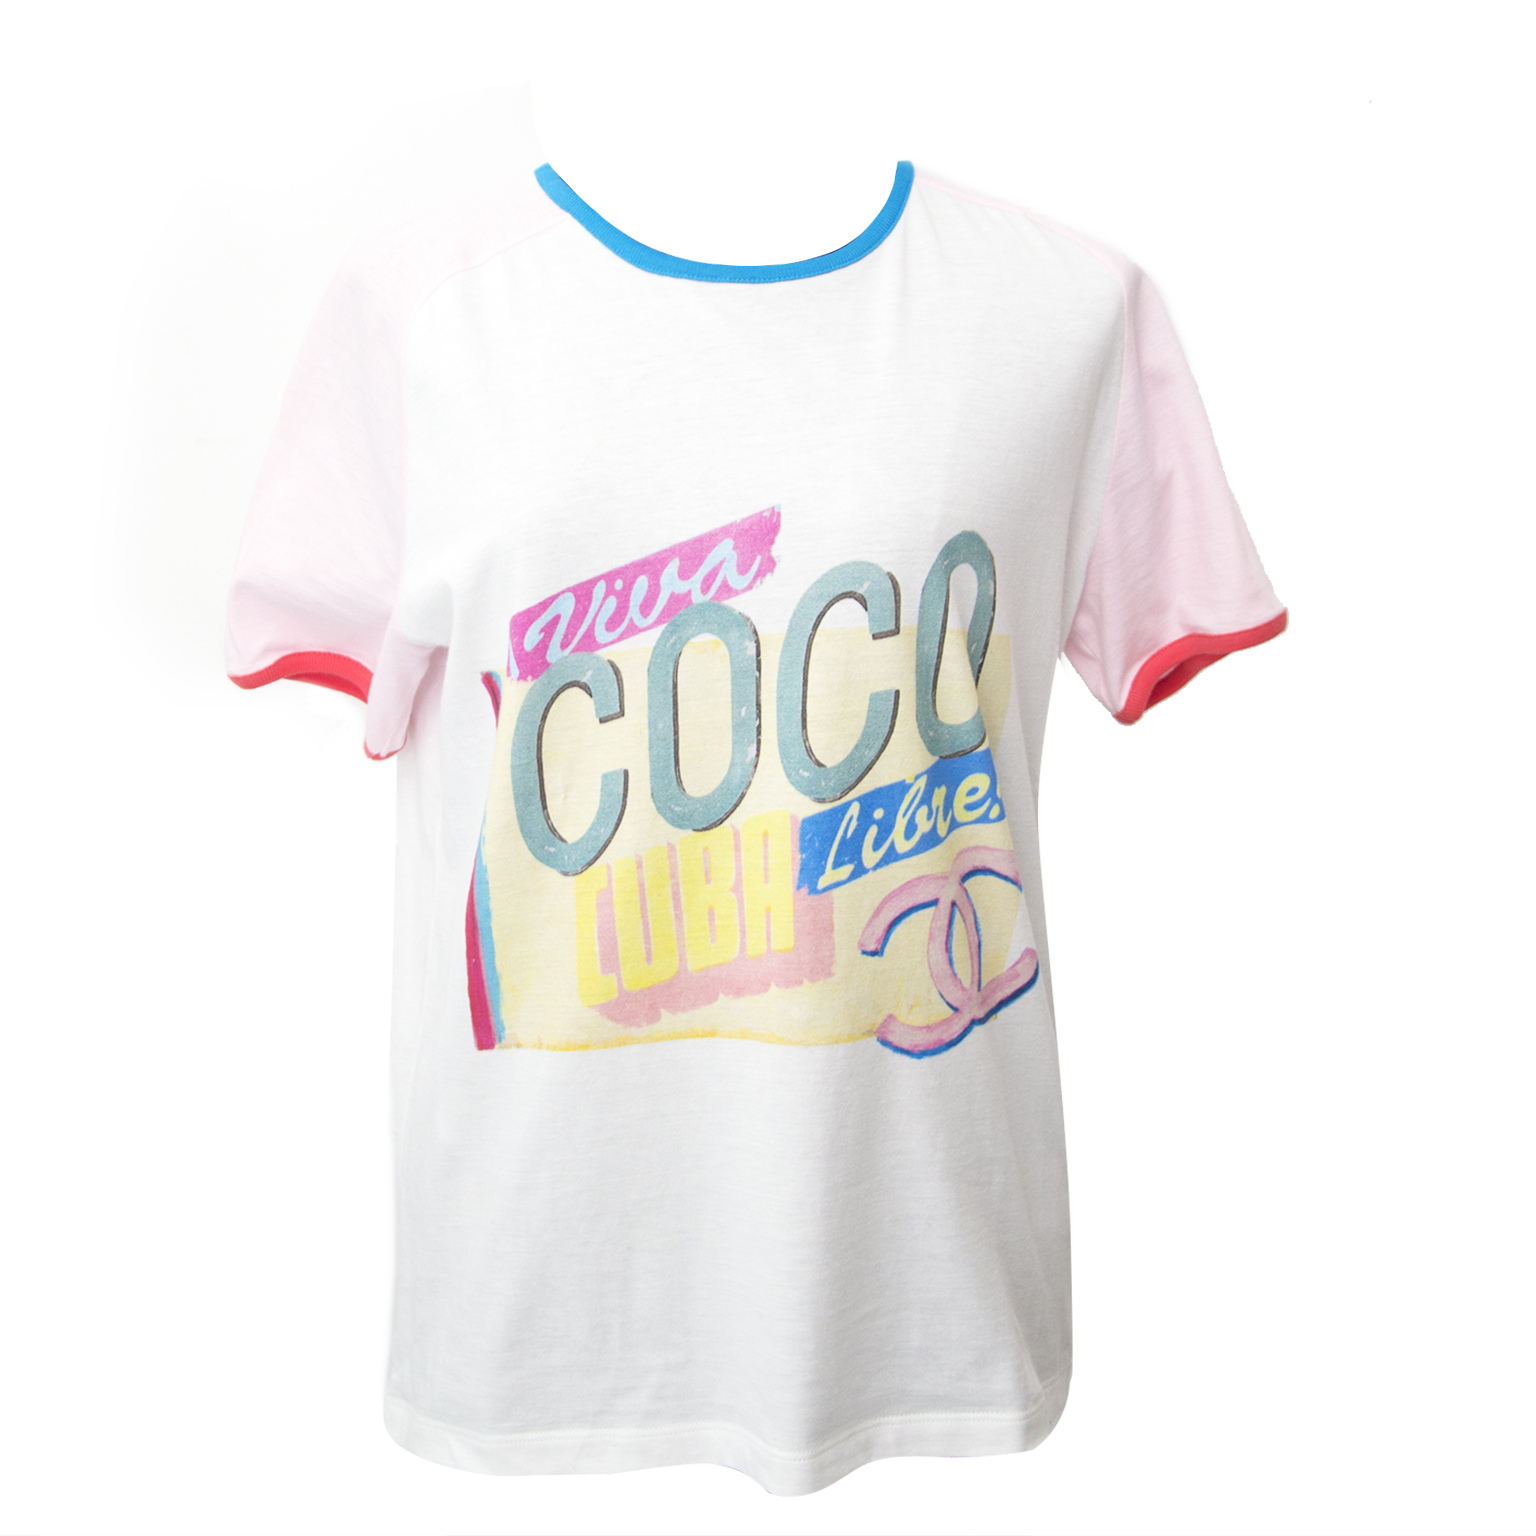 Coco Chanel Tshirt | sites.unimi.it